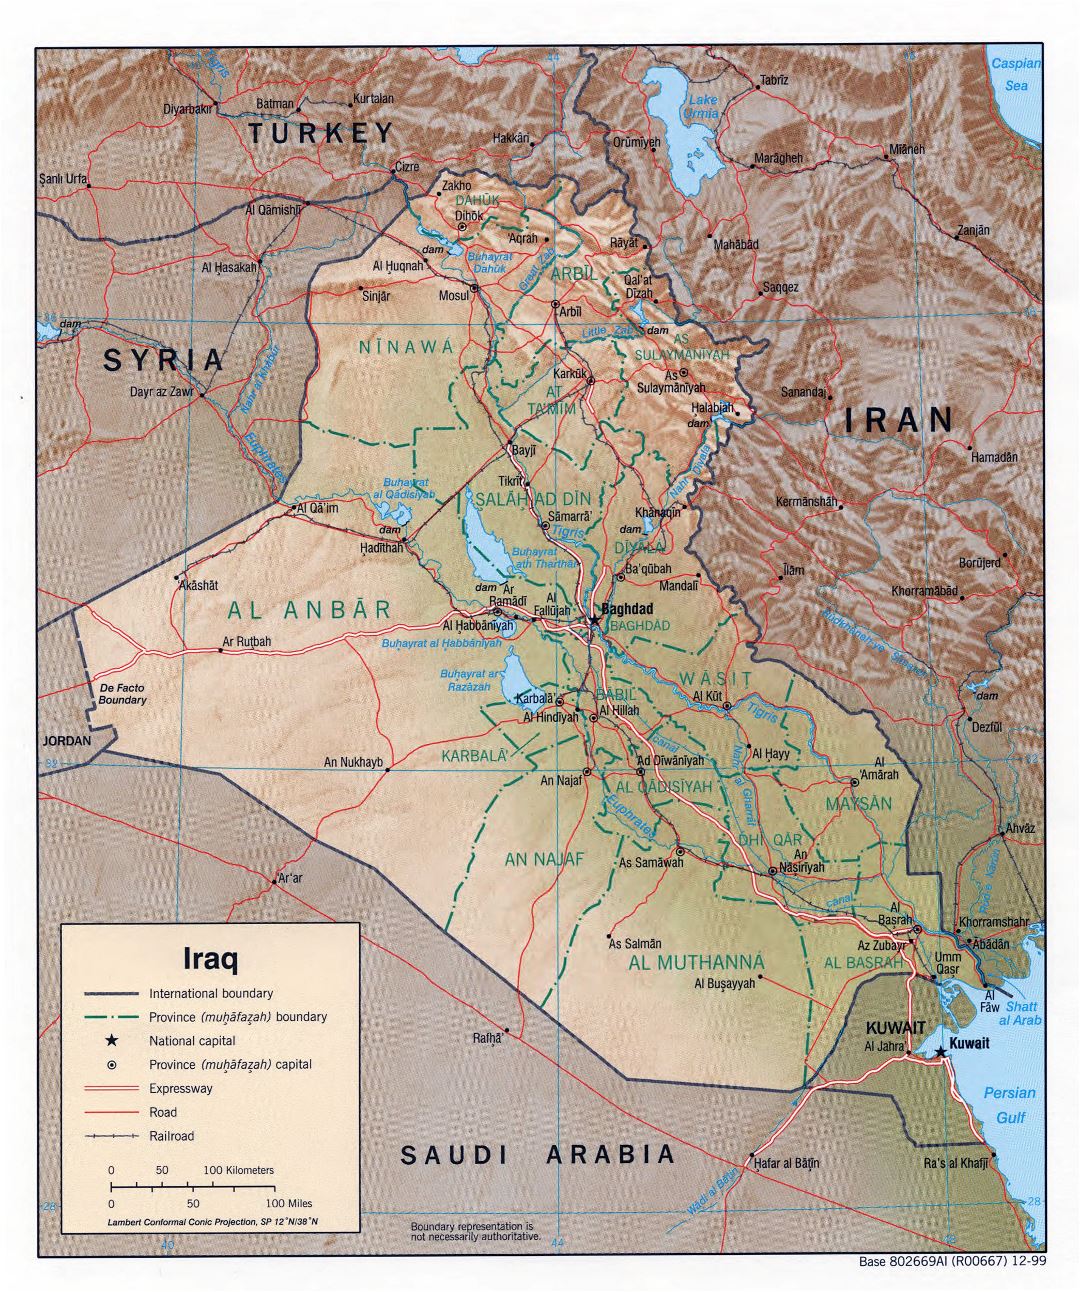 Grande detallado mapa político y administrativo de Irak con relieve, caminos, ferrocarriles y principales ciudades - 1999